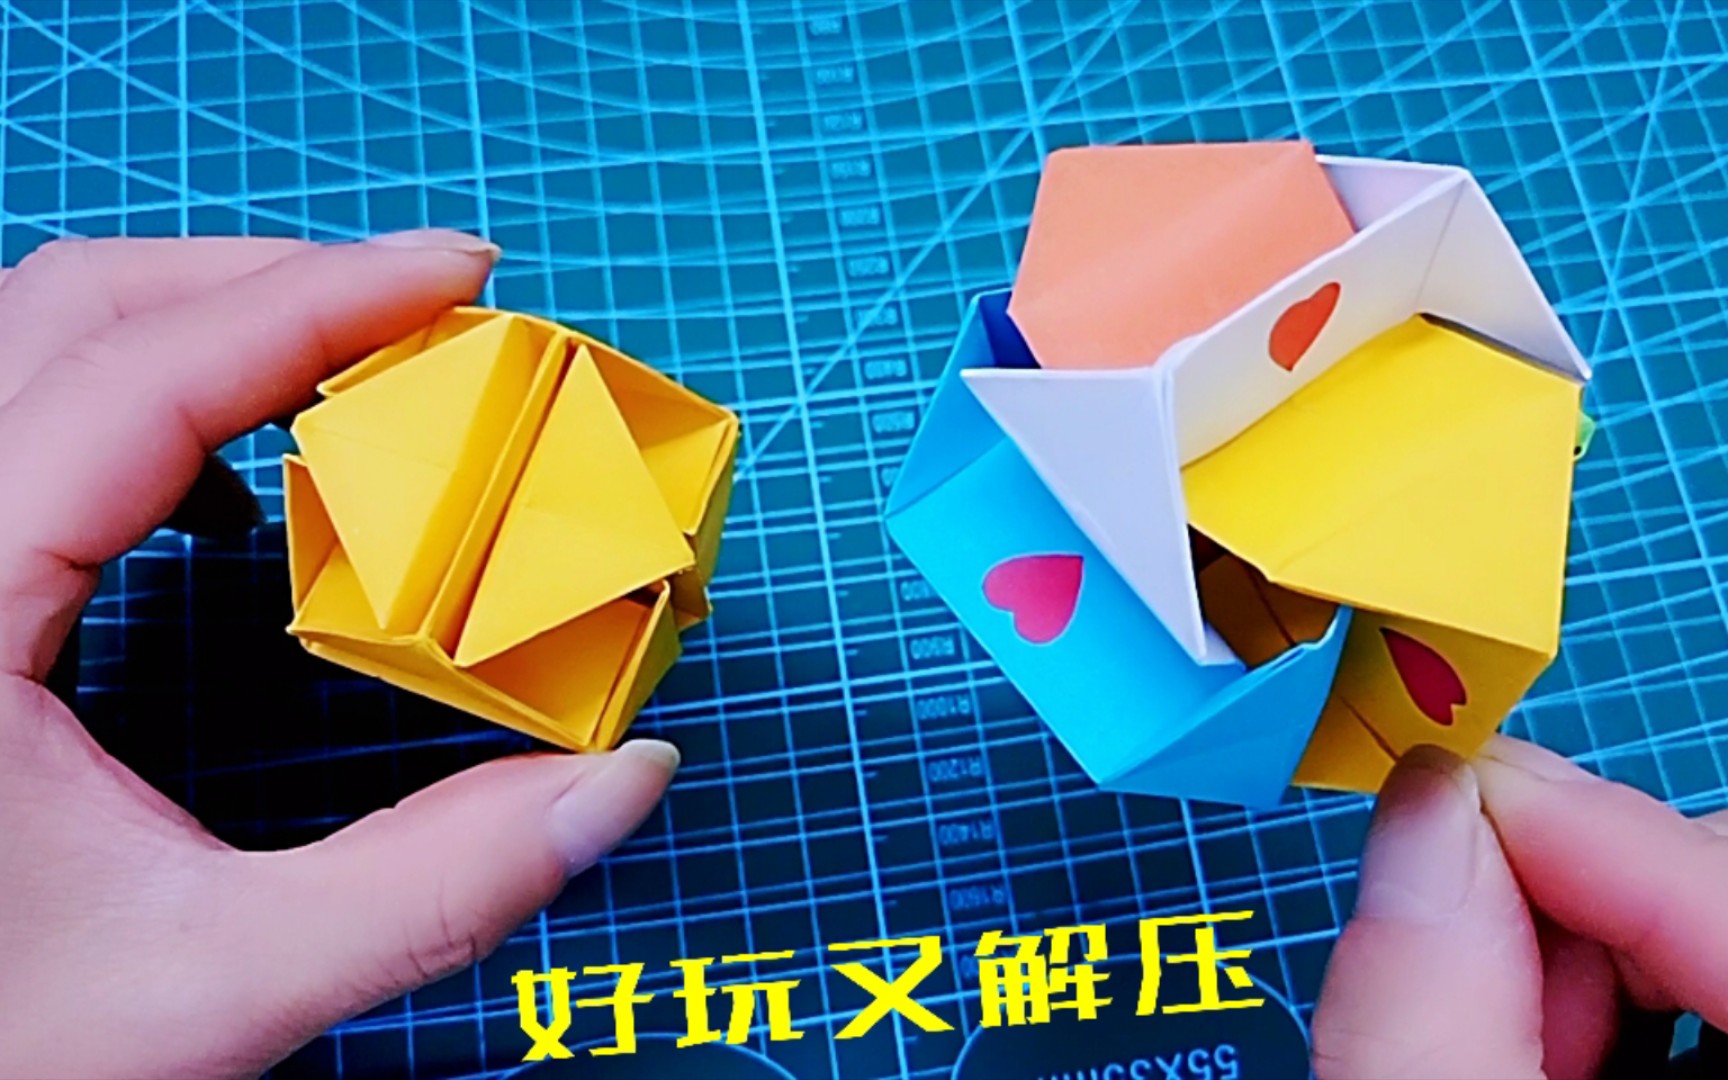 解压神器手工折纸可以变大变小的机关立方体又是表白小礼物